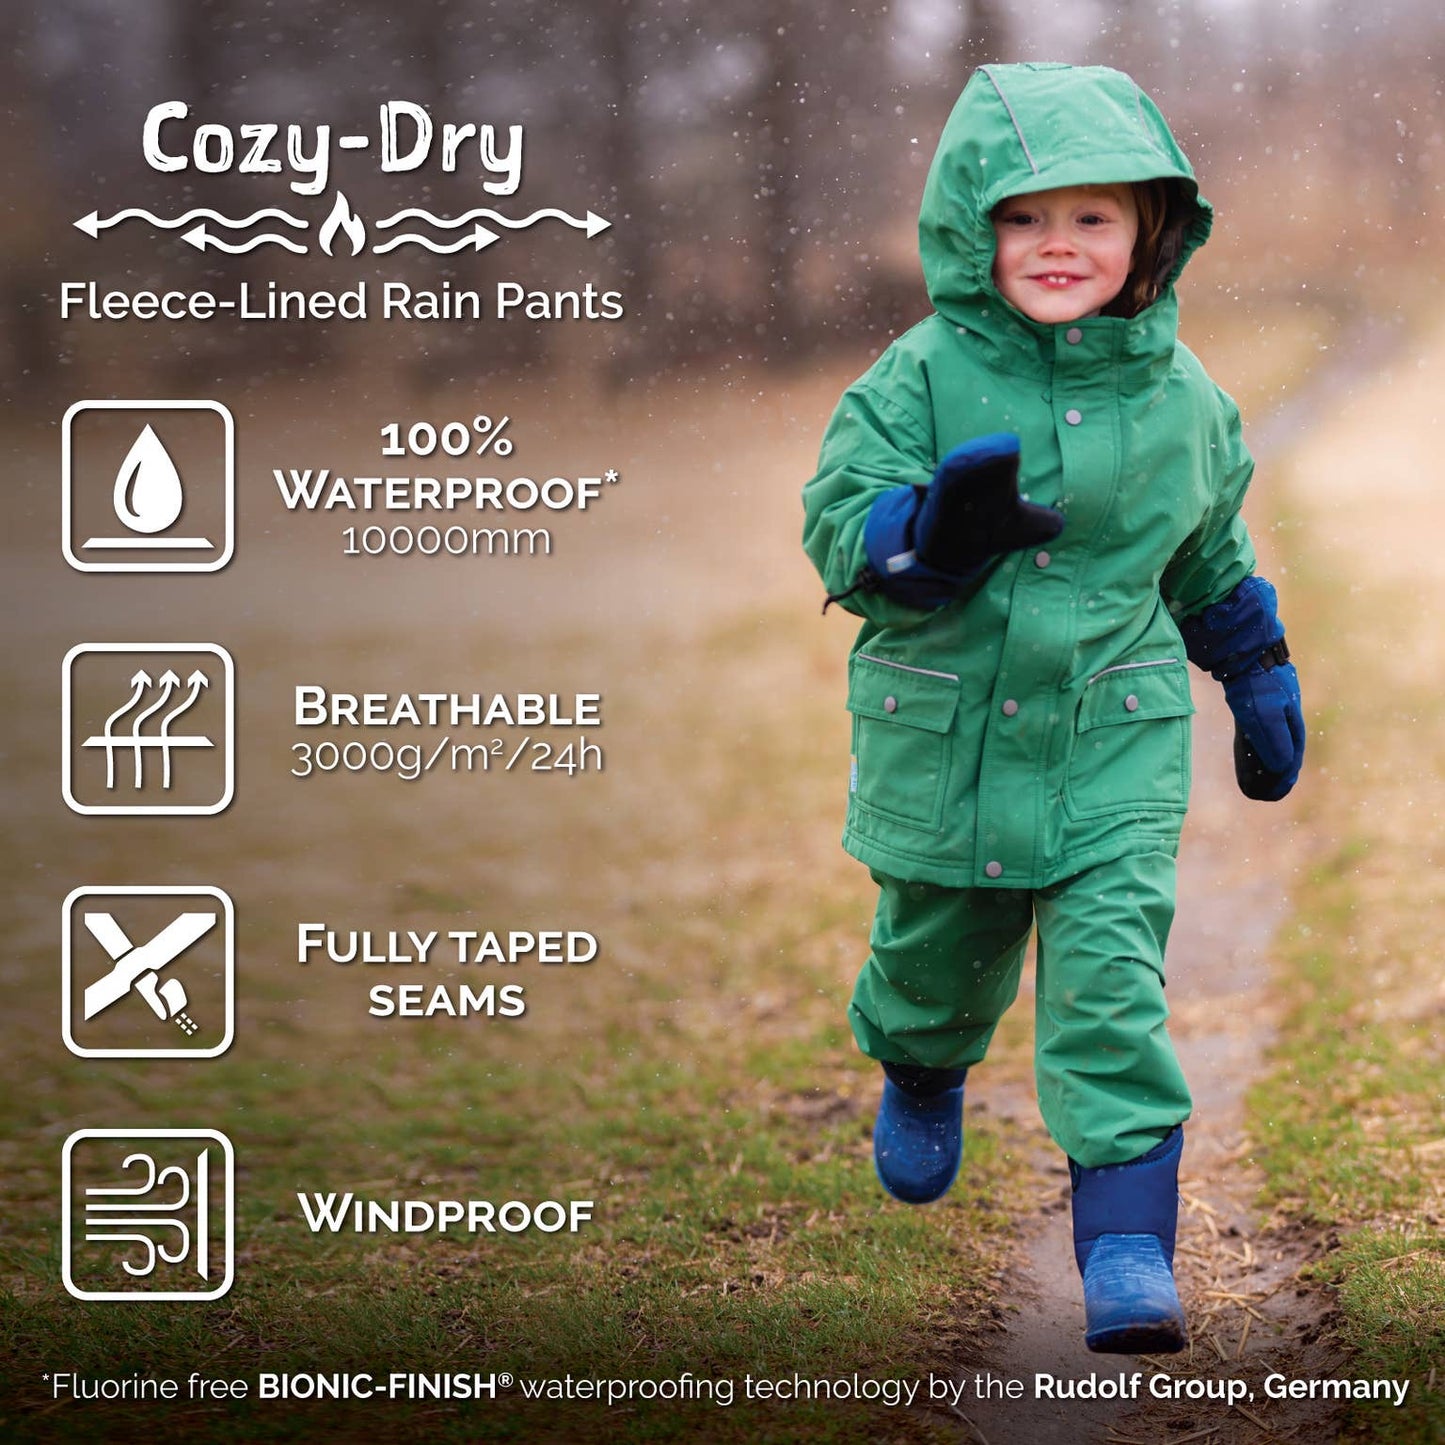 Cozy Dry Rain and Snow Pants